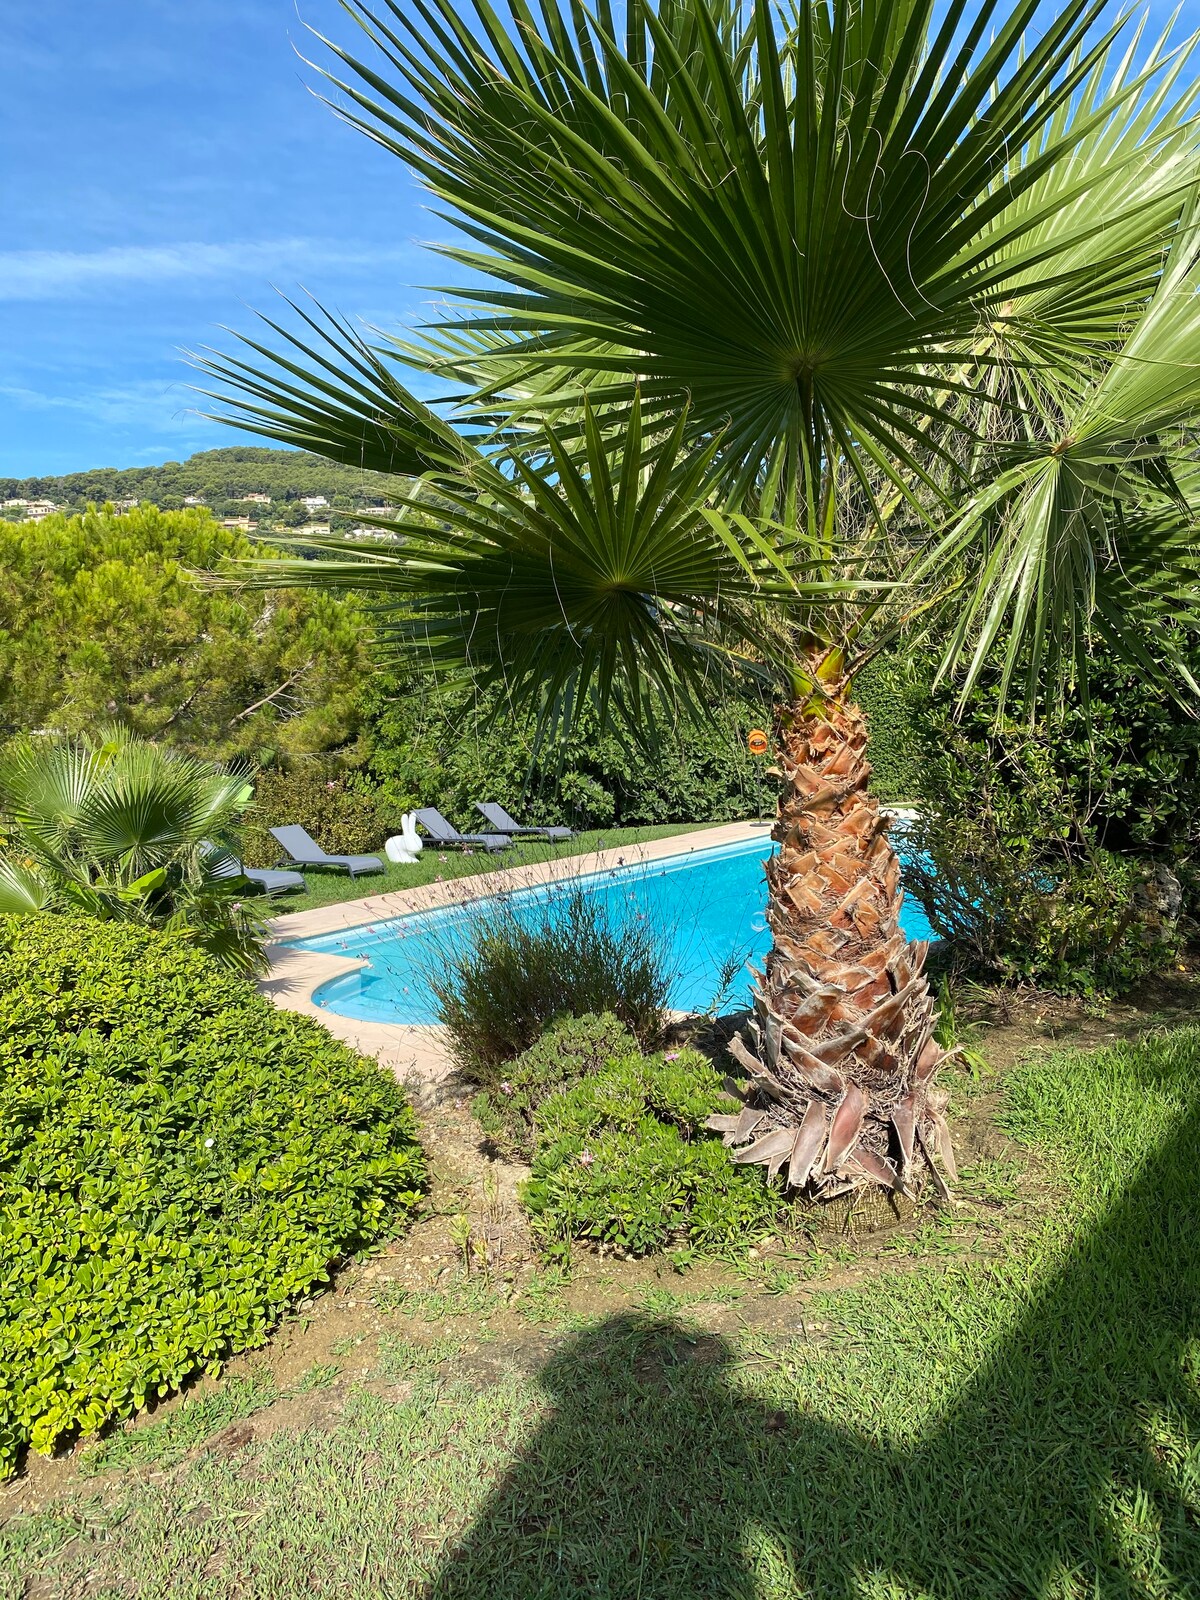 Sea view, calm, Villa Mademoiselle d'Azur, Antibes